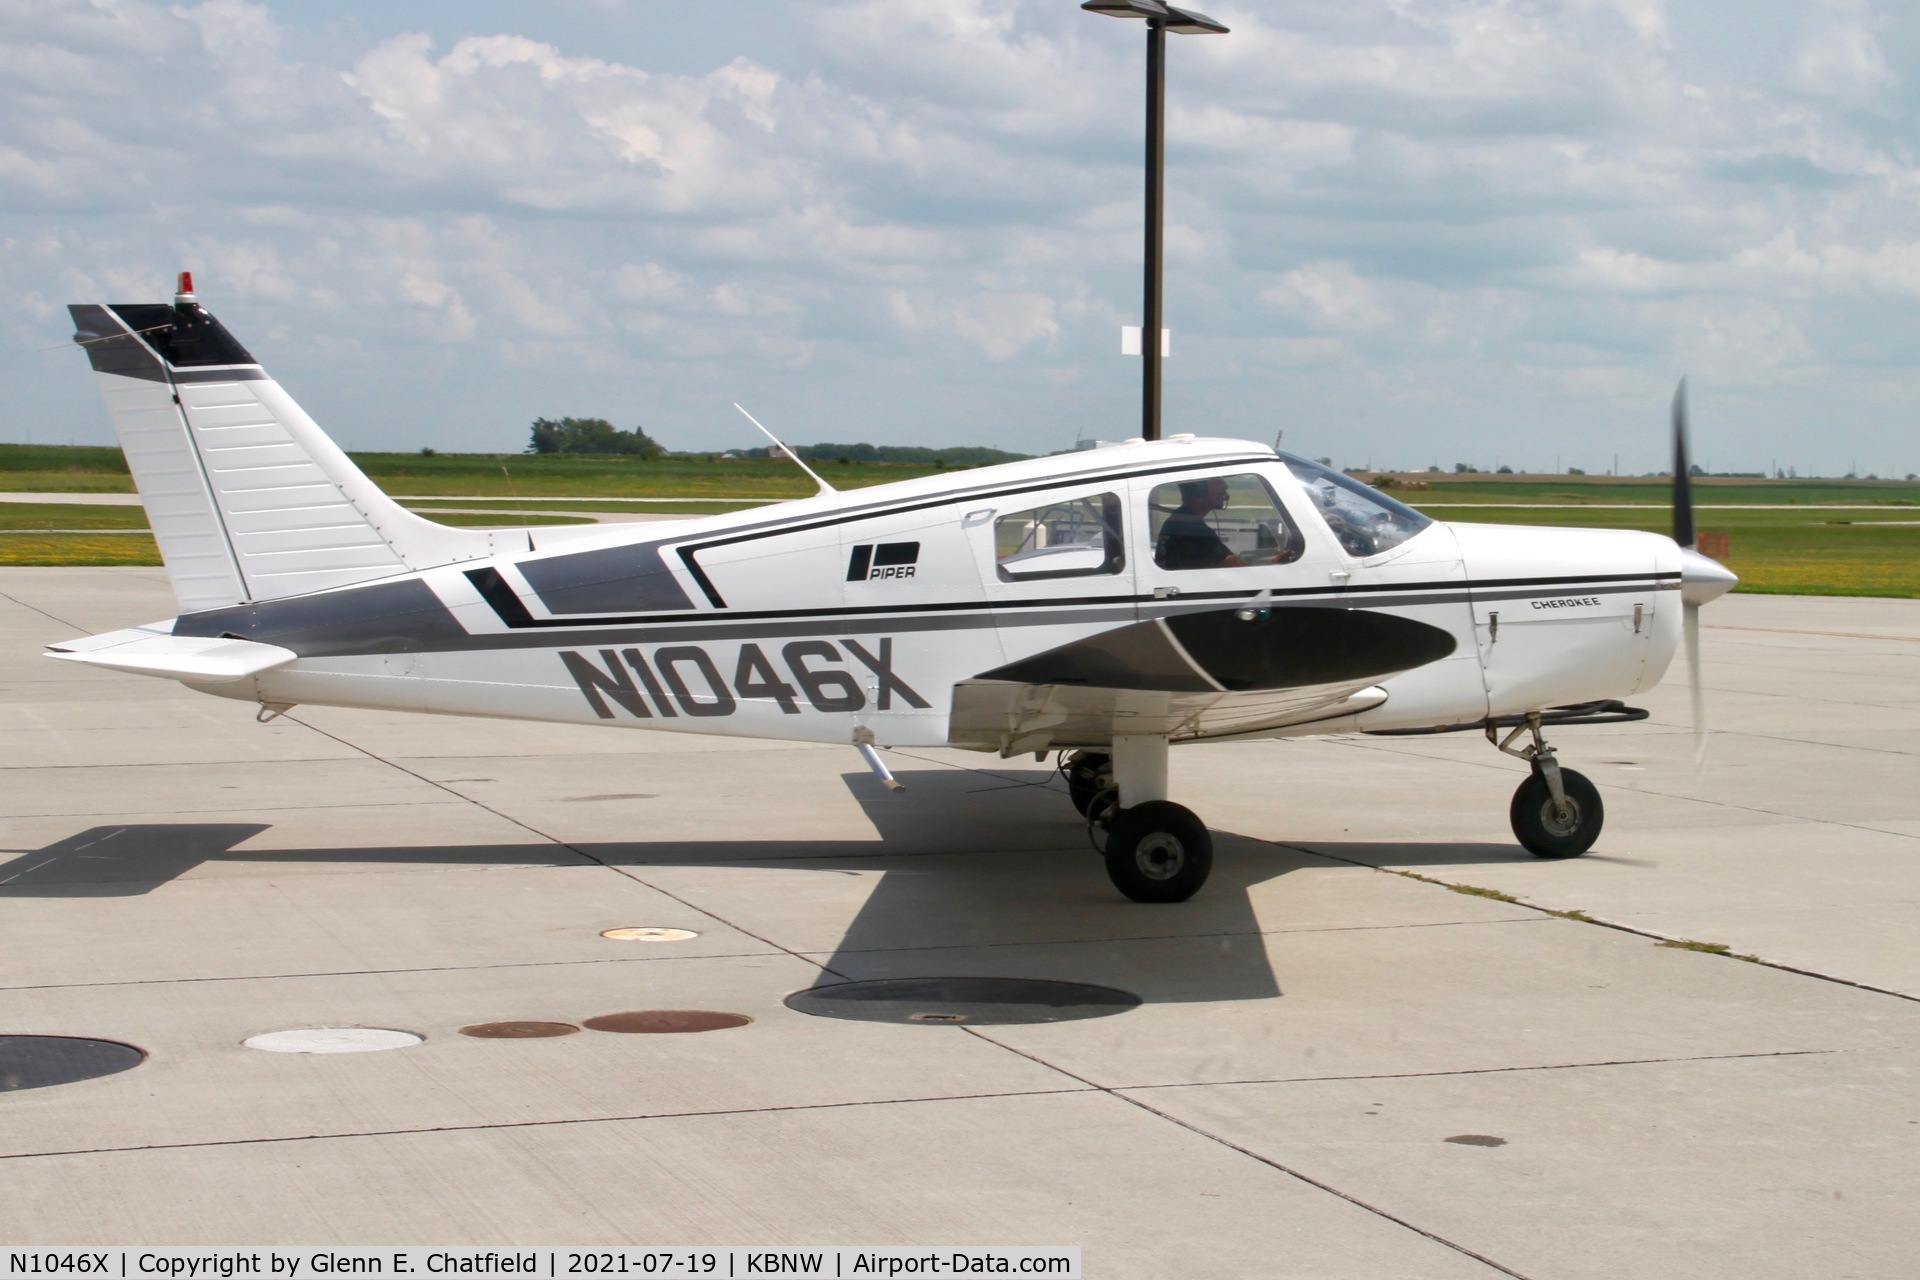 N1046X, 1975 Piper PA-28-140 Cherokee C/N 28-7525266, Taxiing in